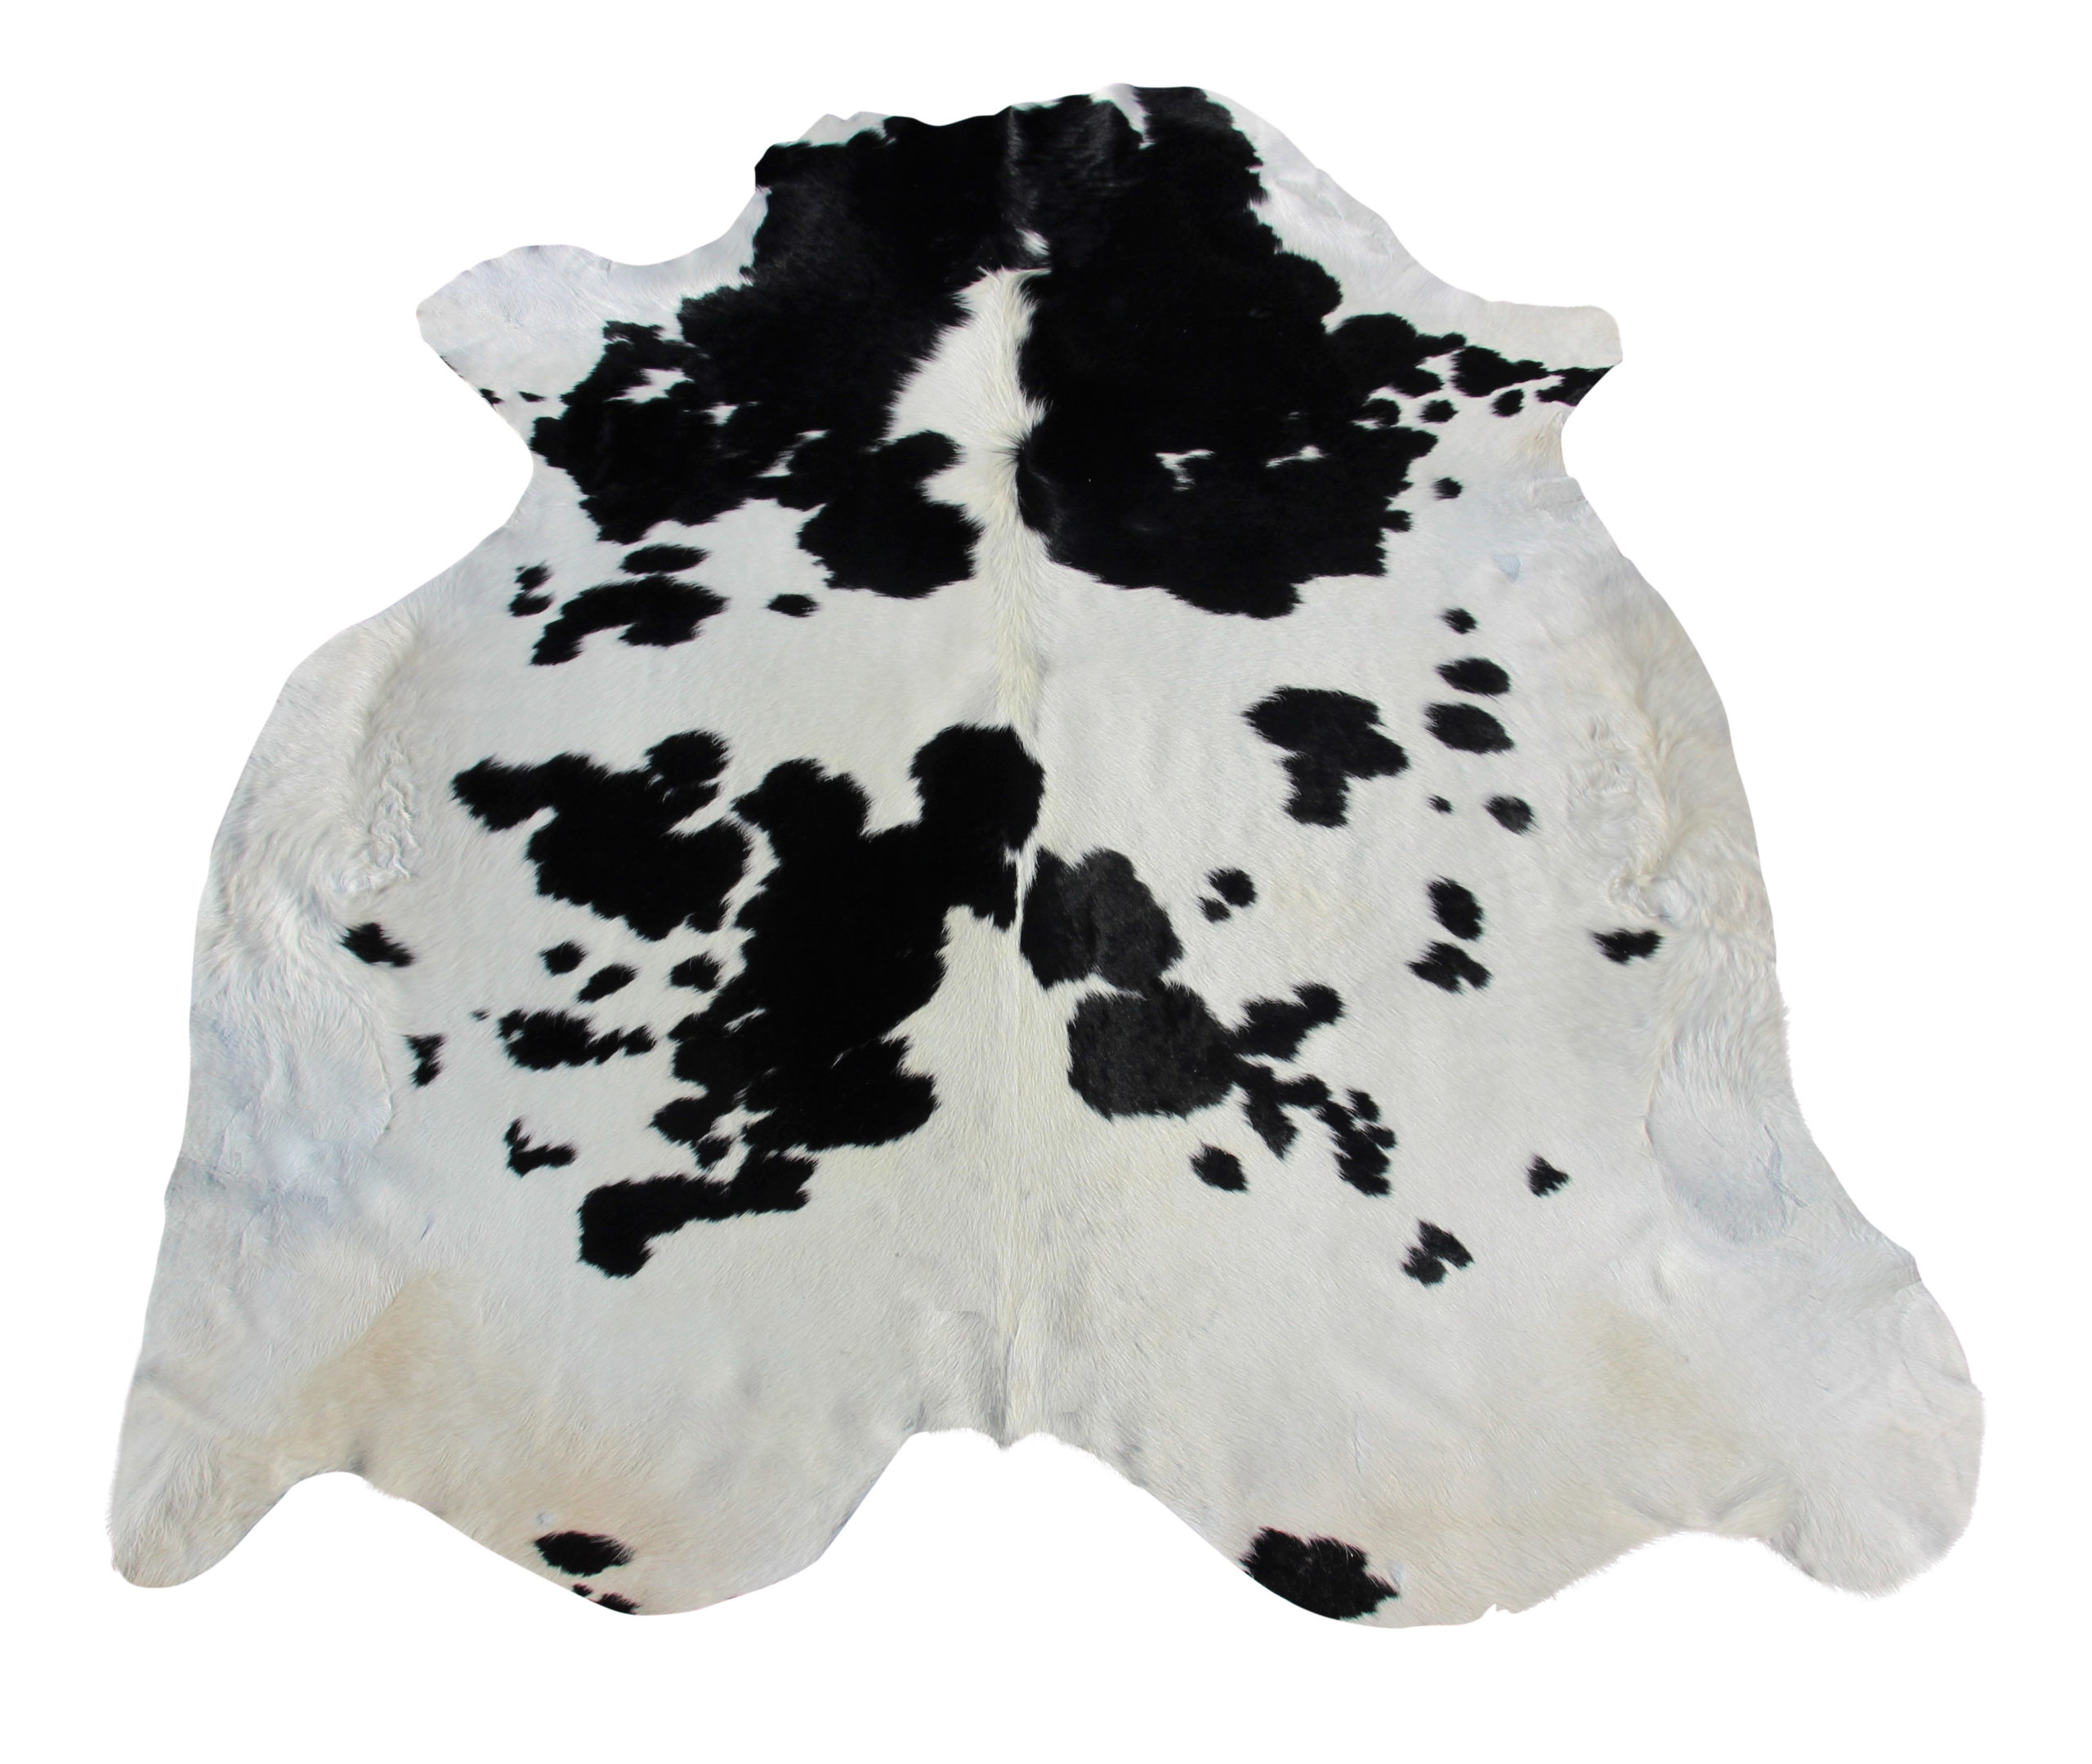 bestuurder poll Kwadrant koeienhuid zwart-wit nr. 204/ 3 – Het Millus Handelshuis